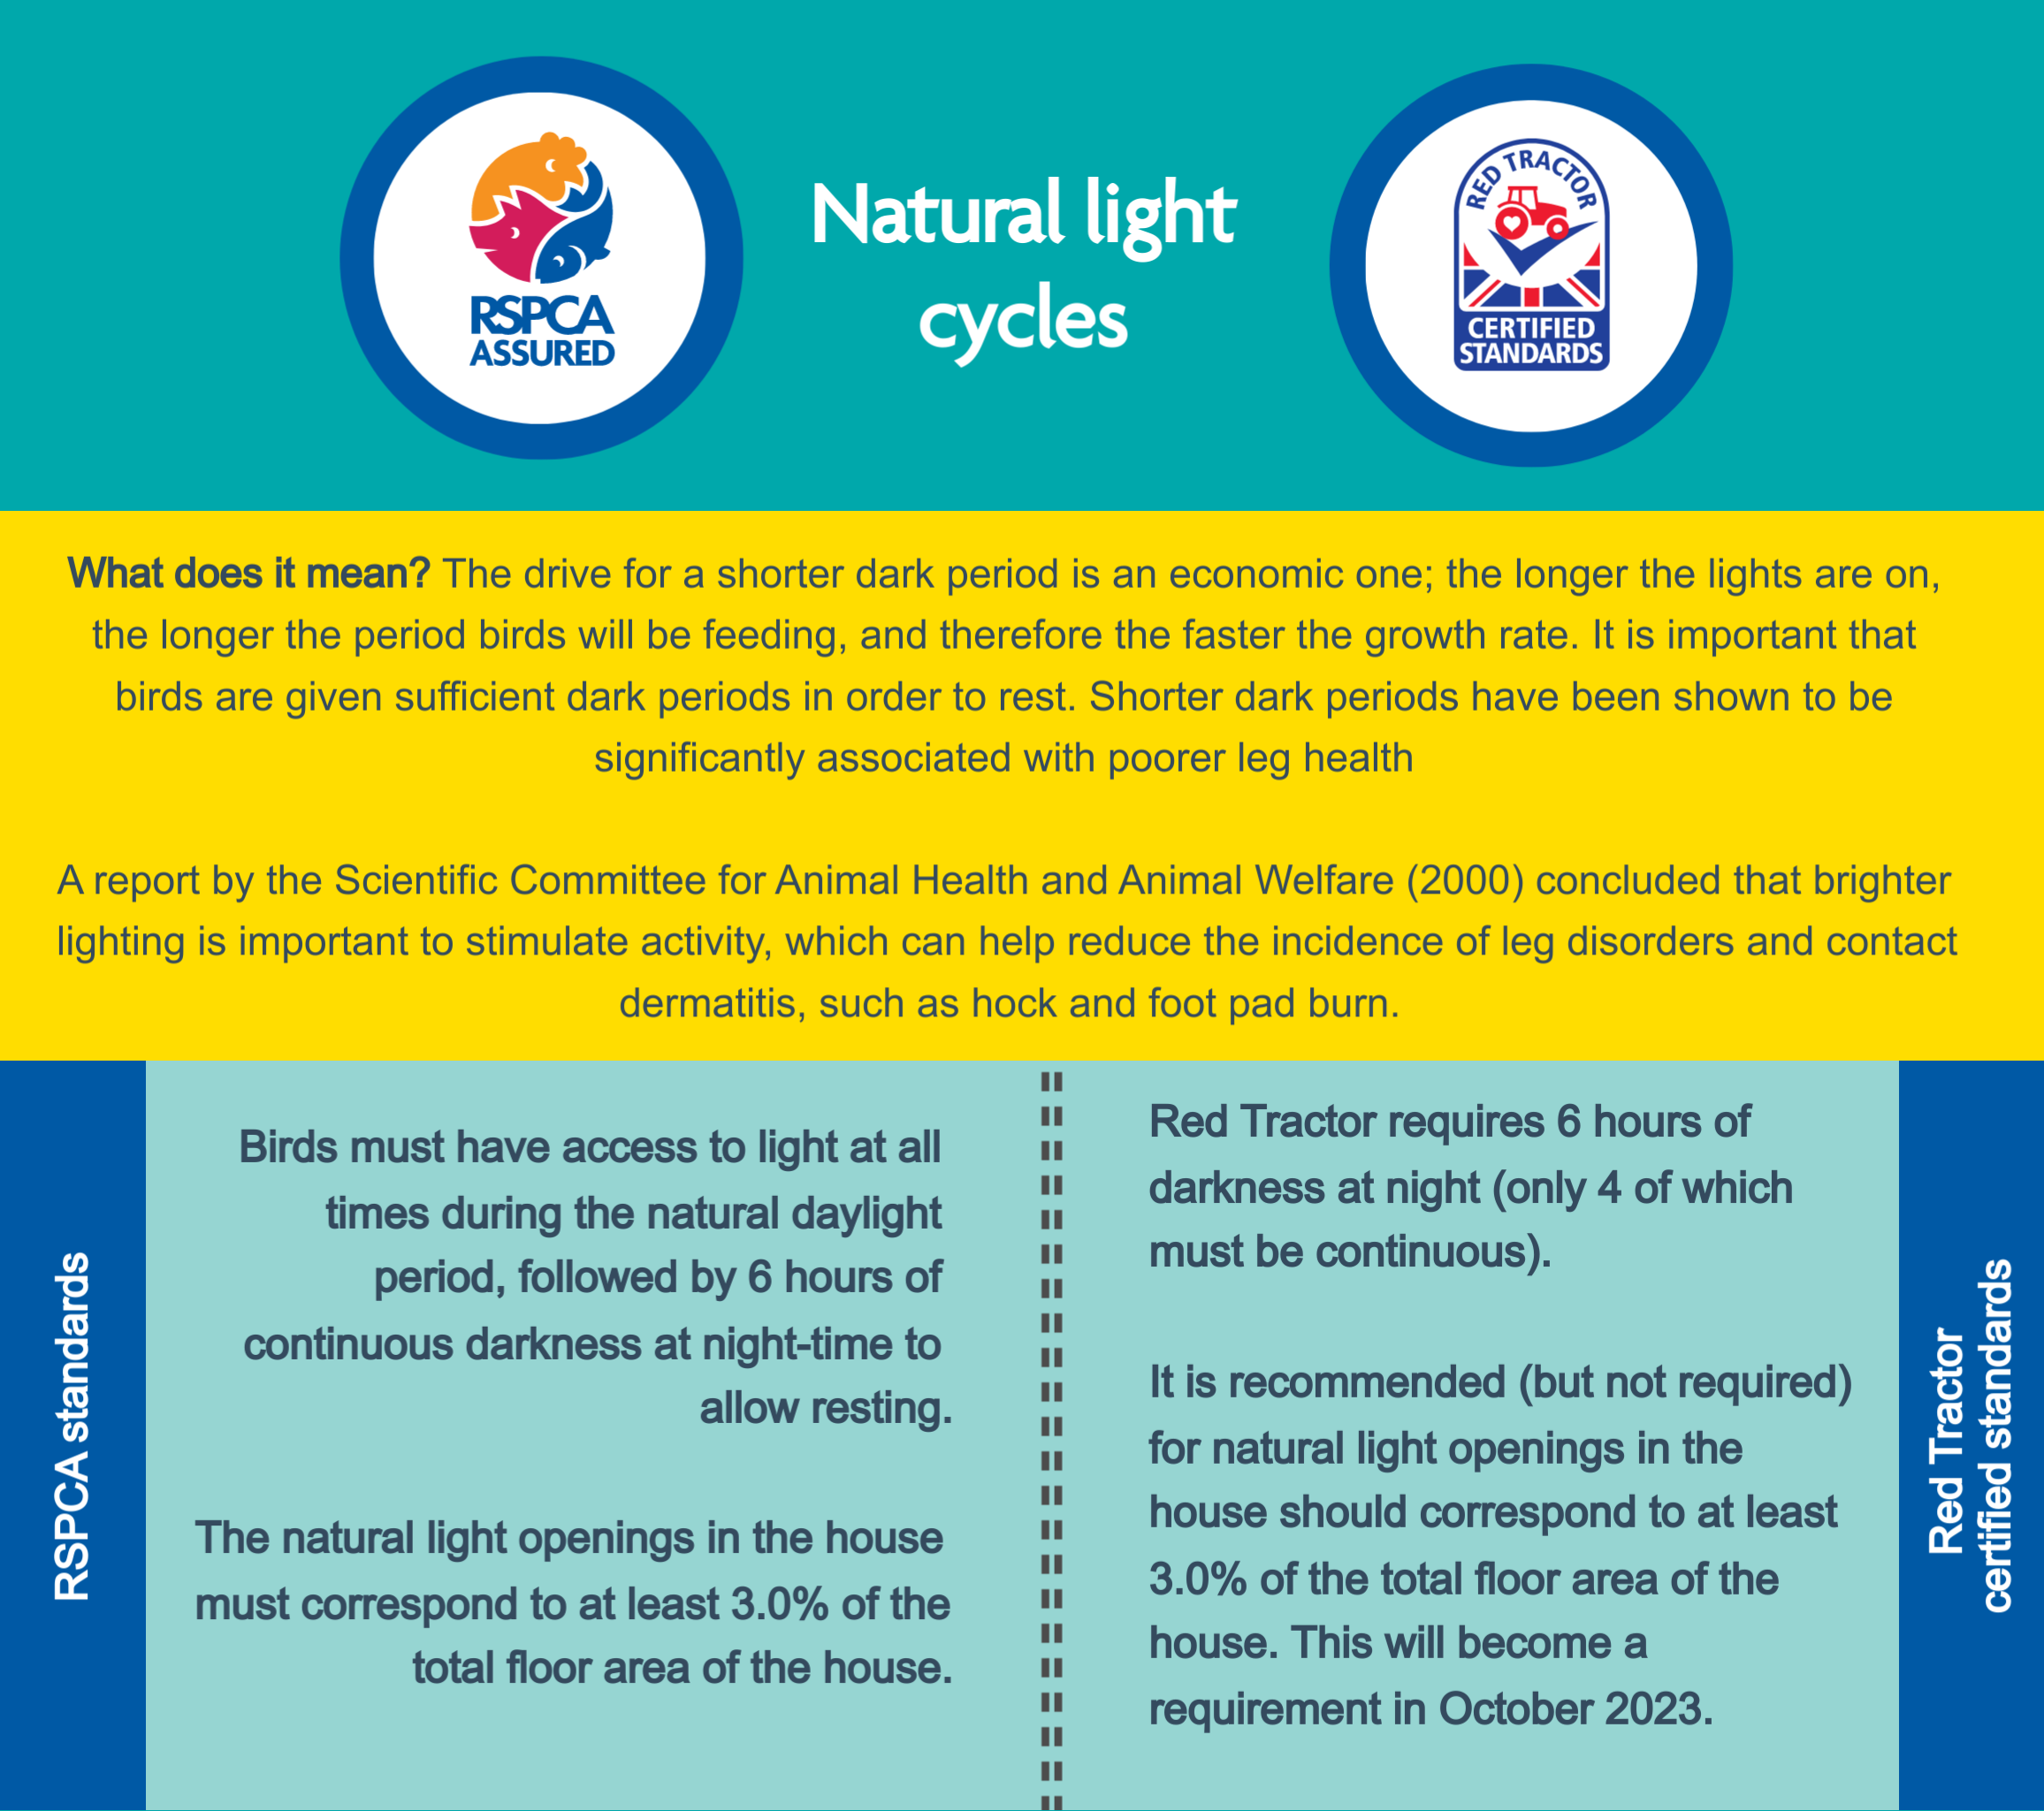 Natural light cycles